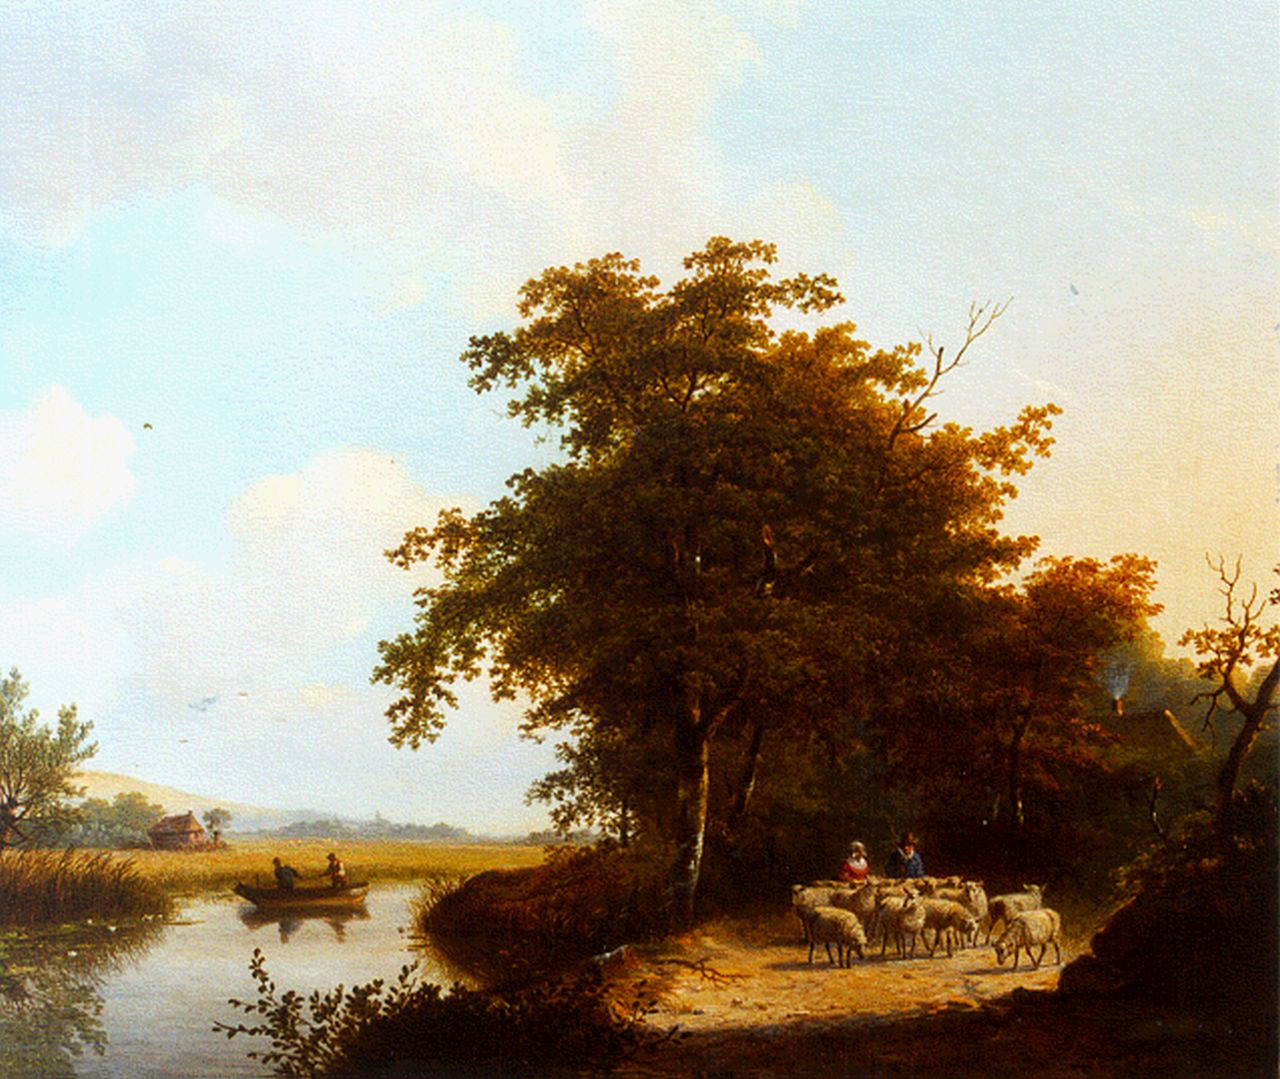 Stok J. van der | Jacobus van der Stok, A wooded landscape, Öl auf Leinwand 50,4 x 59,0 cm, signed l.r. und dated '30